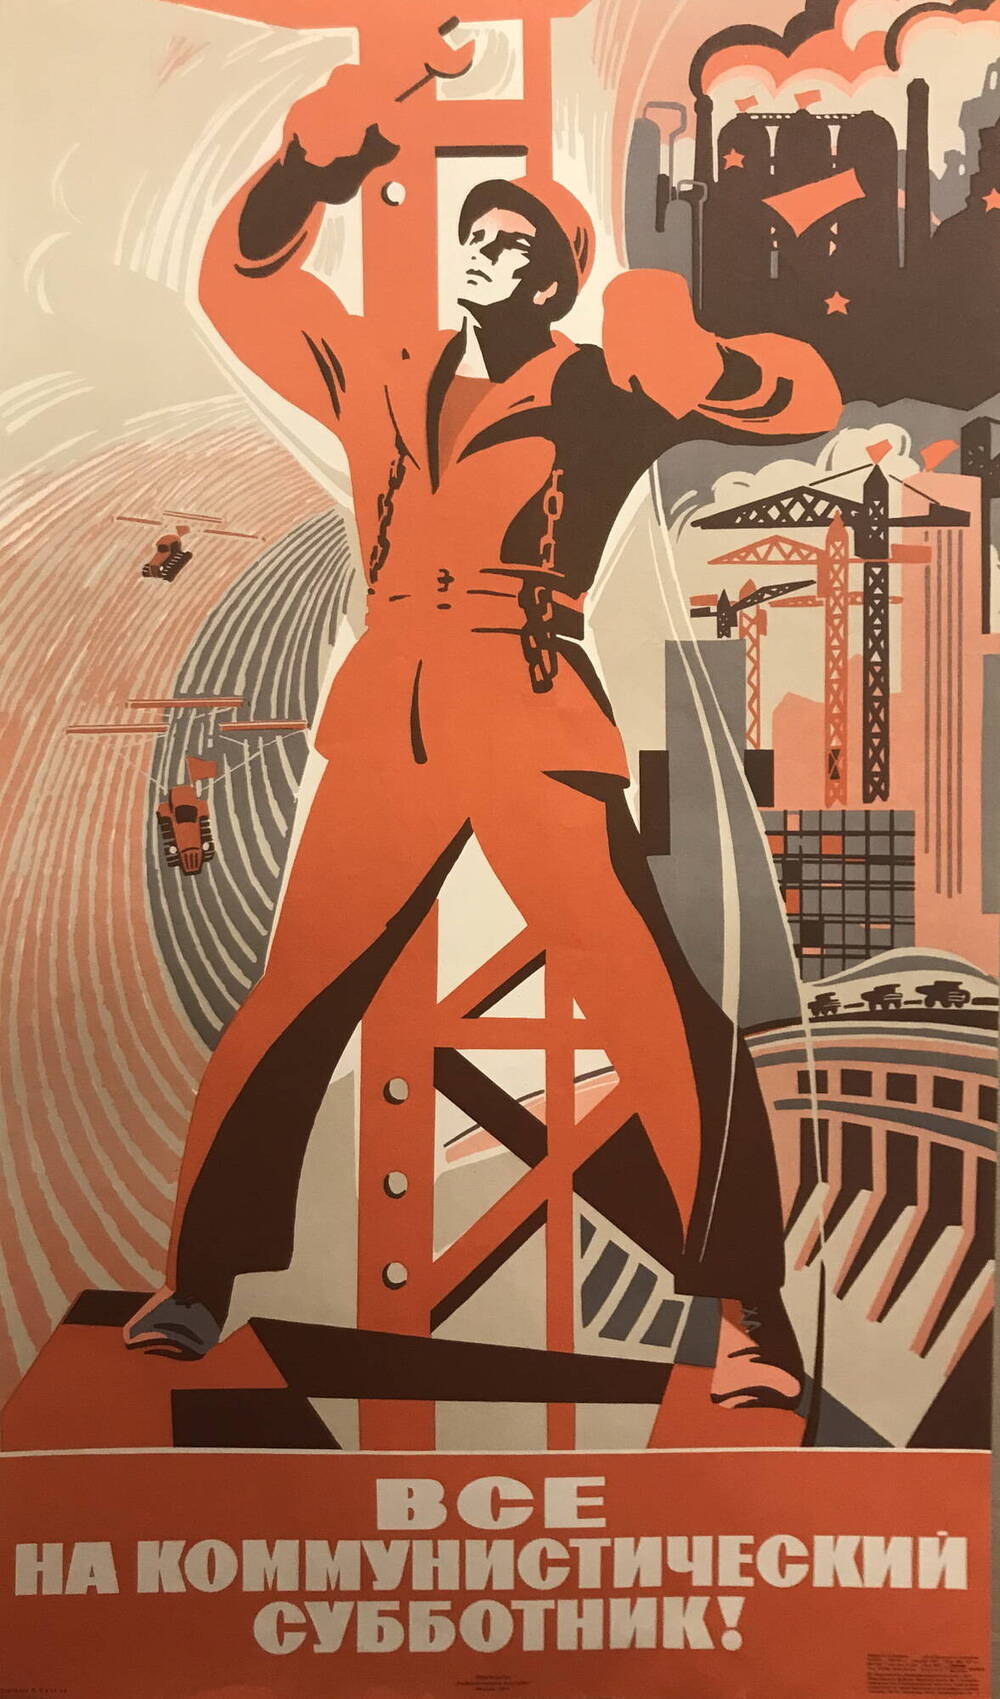 Инженер страны советов аудиокнига слушать. Советские лозунги. Плакат. Советские постеры. Советские лозунги и плакаты.